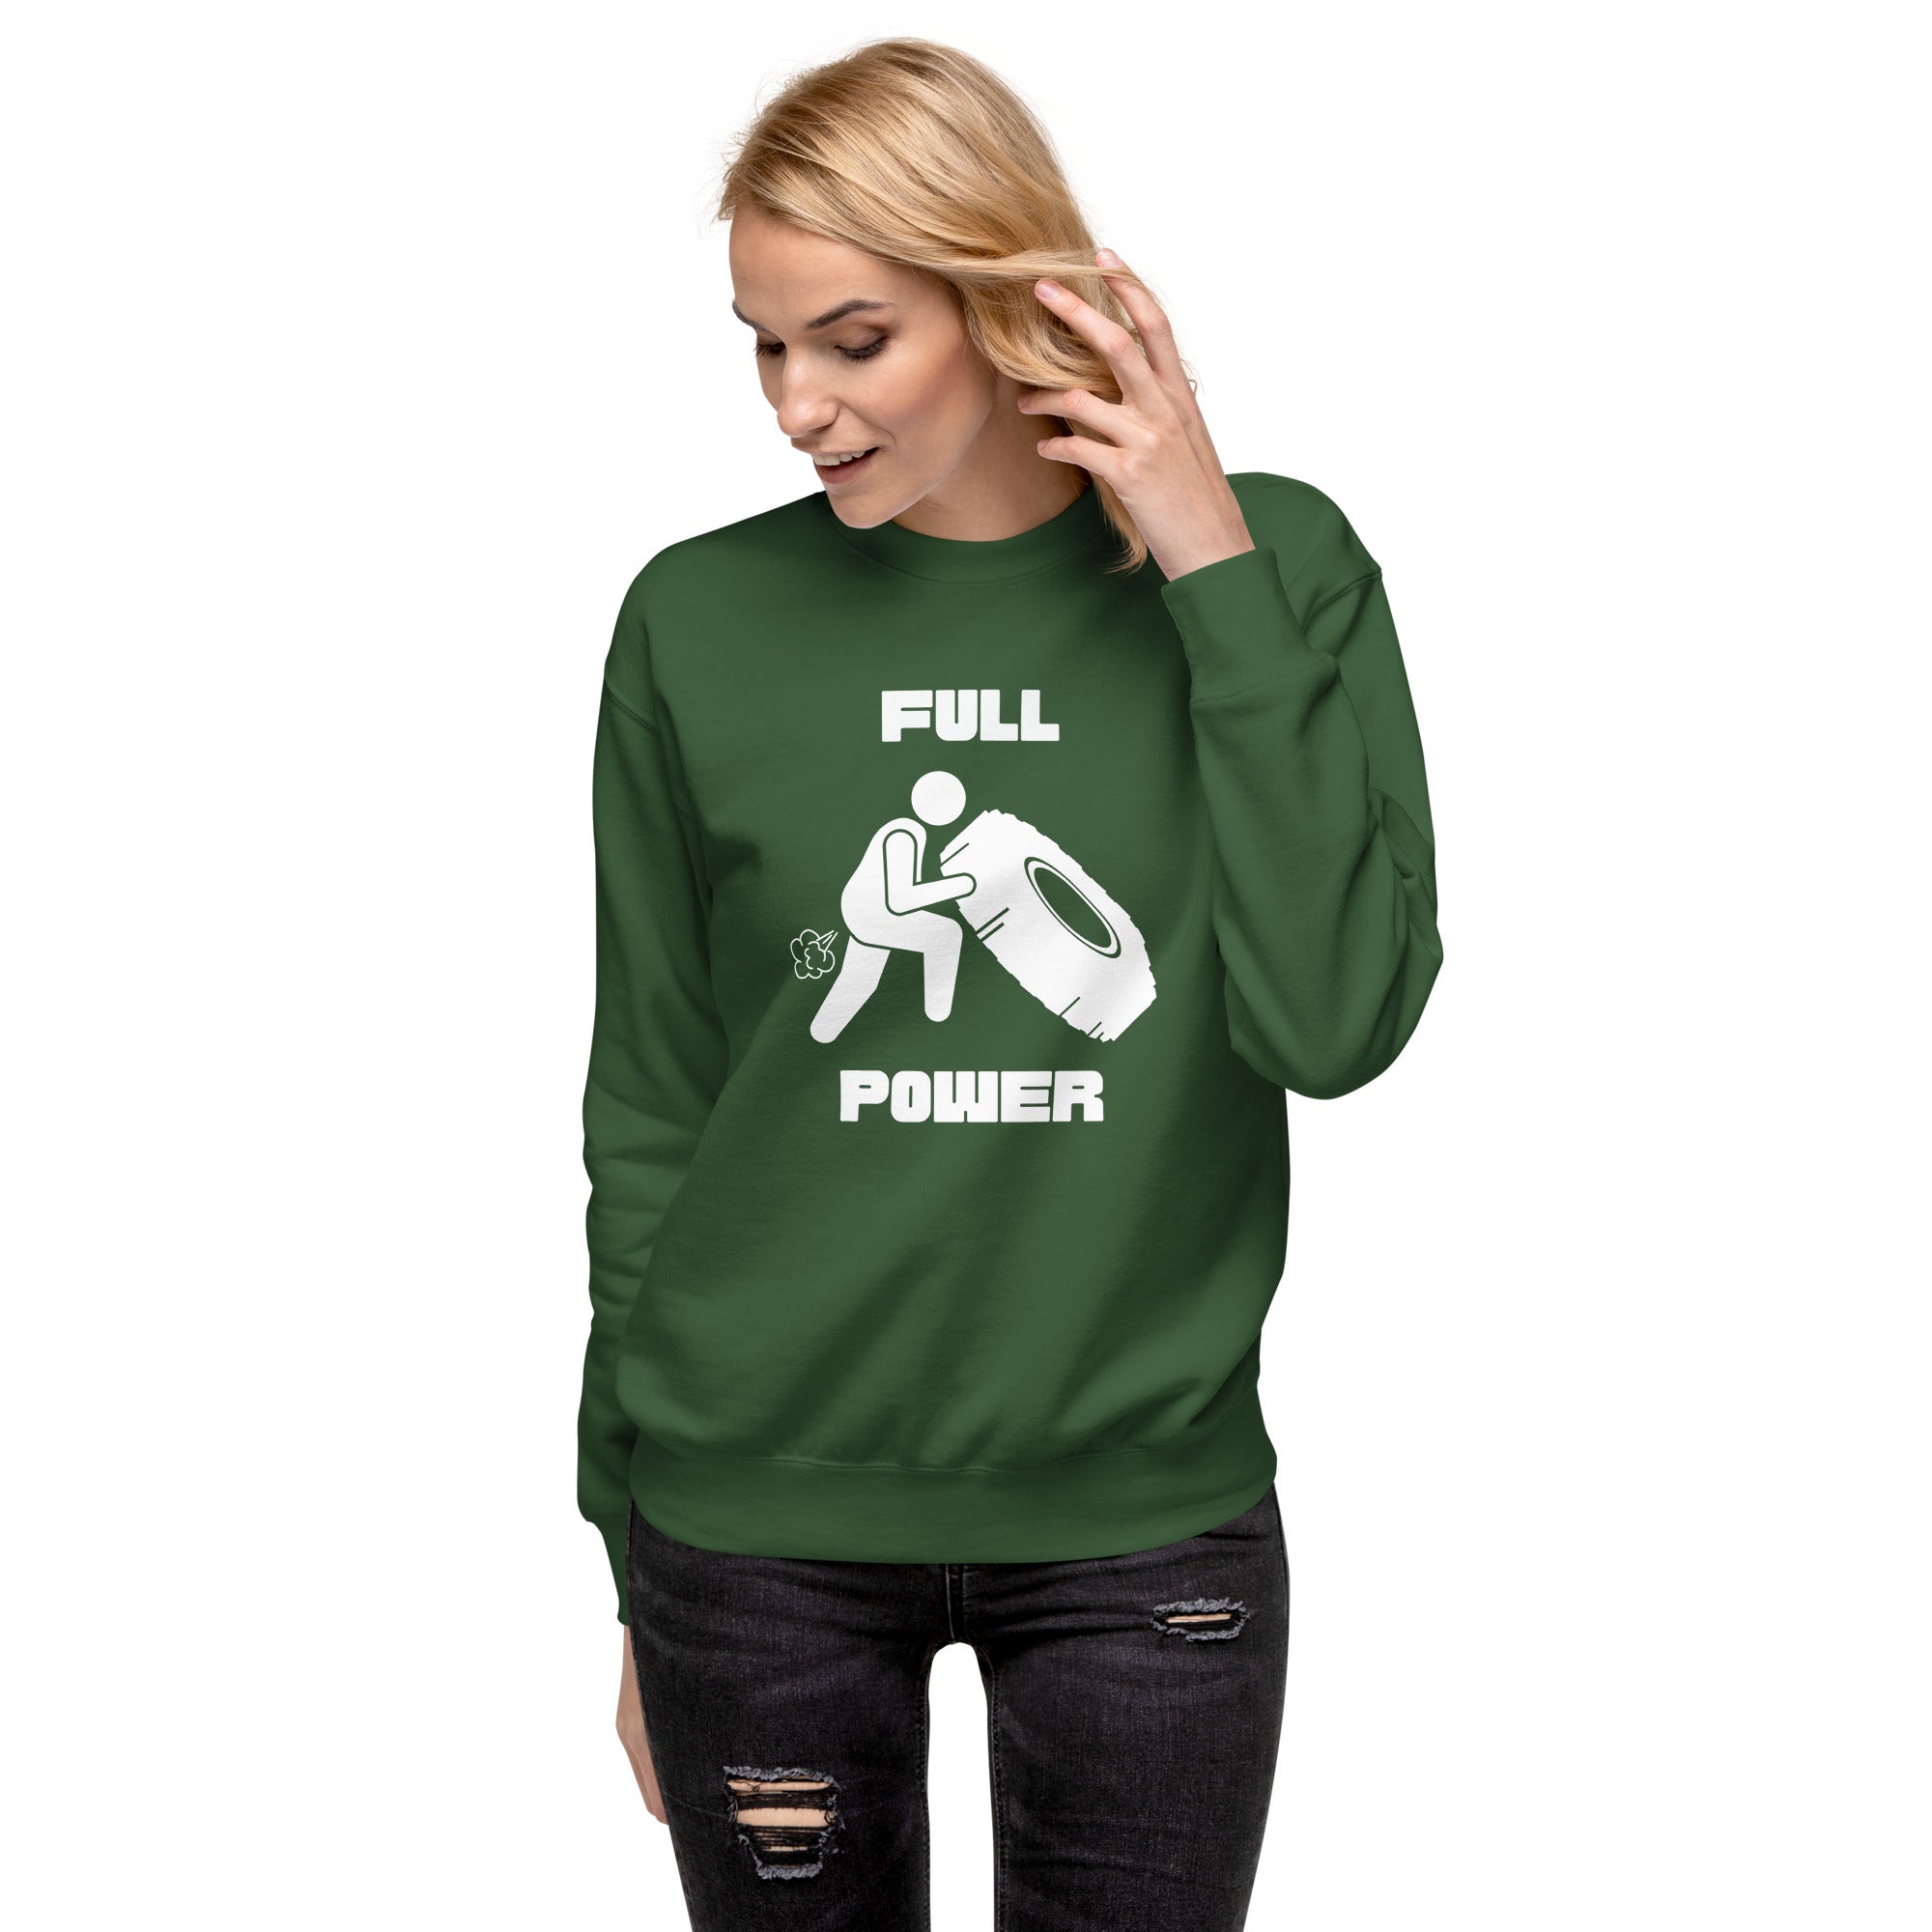 Full Power Women's Premium Sweatshirt